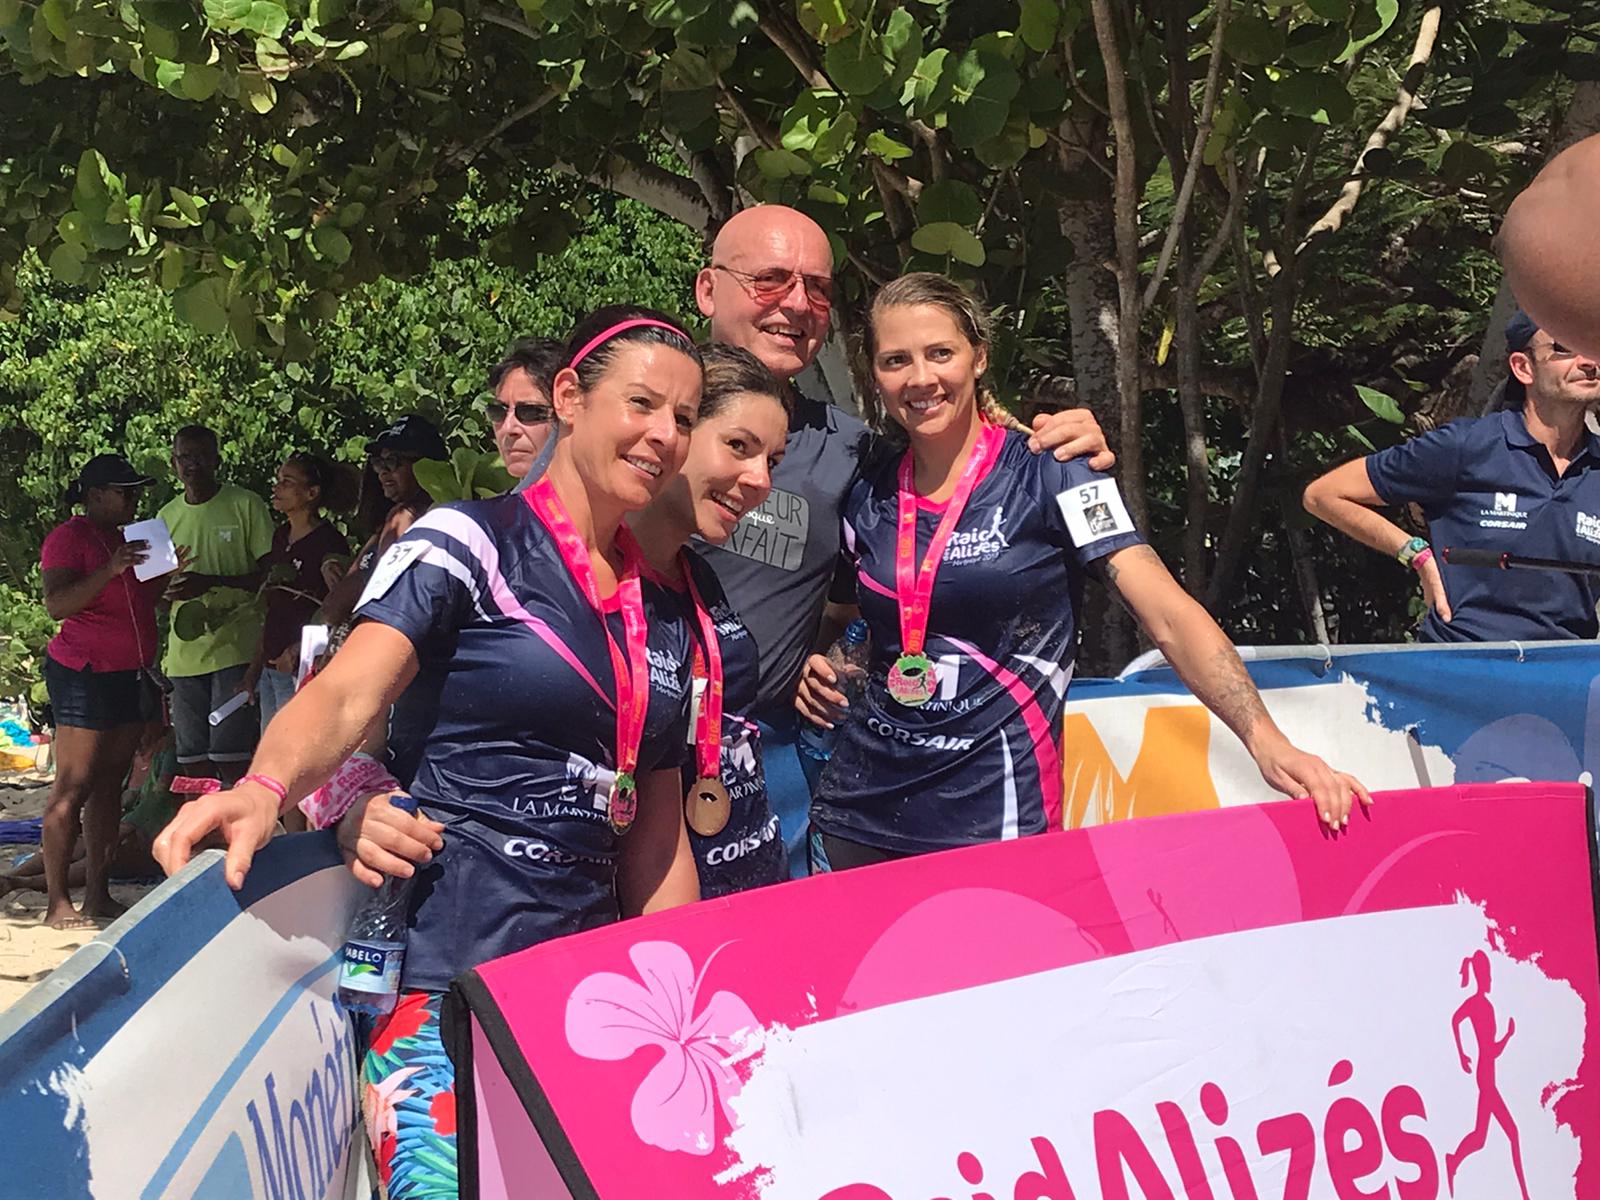     Raid des Alizés 2019 : Team Rideuses remporte l'épreuve du jour

